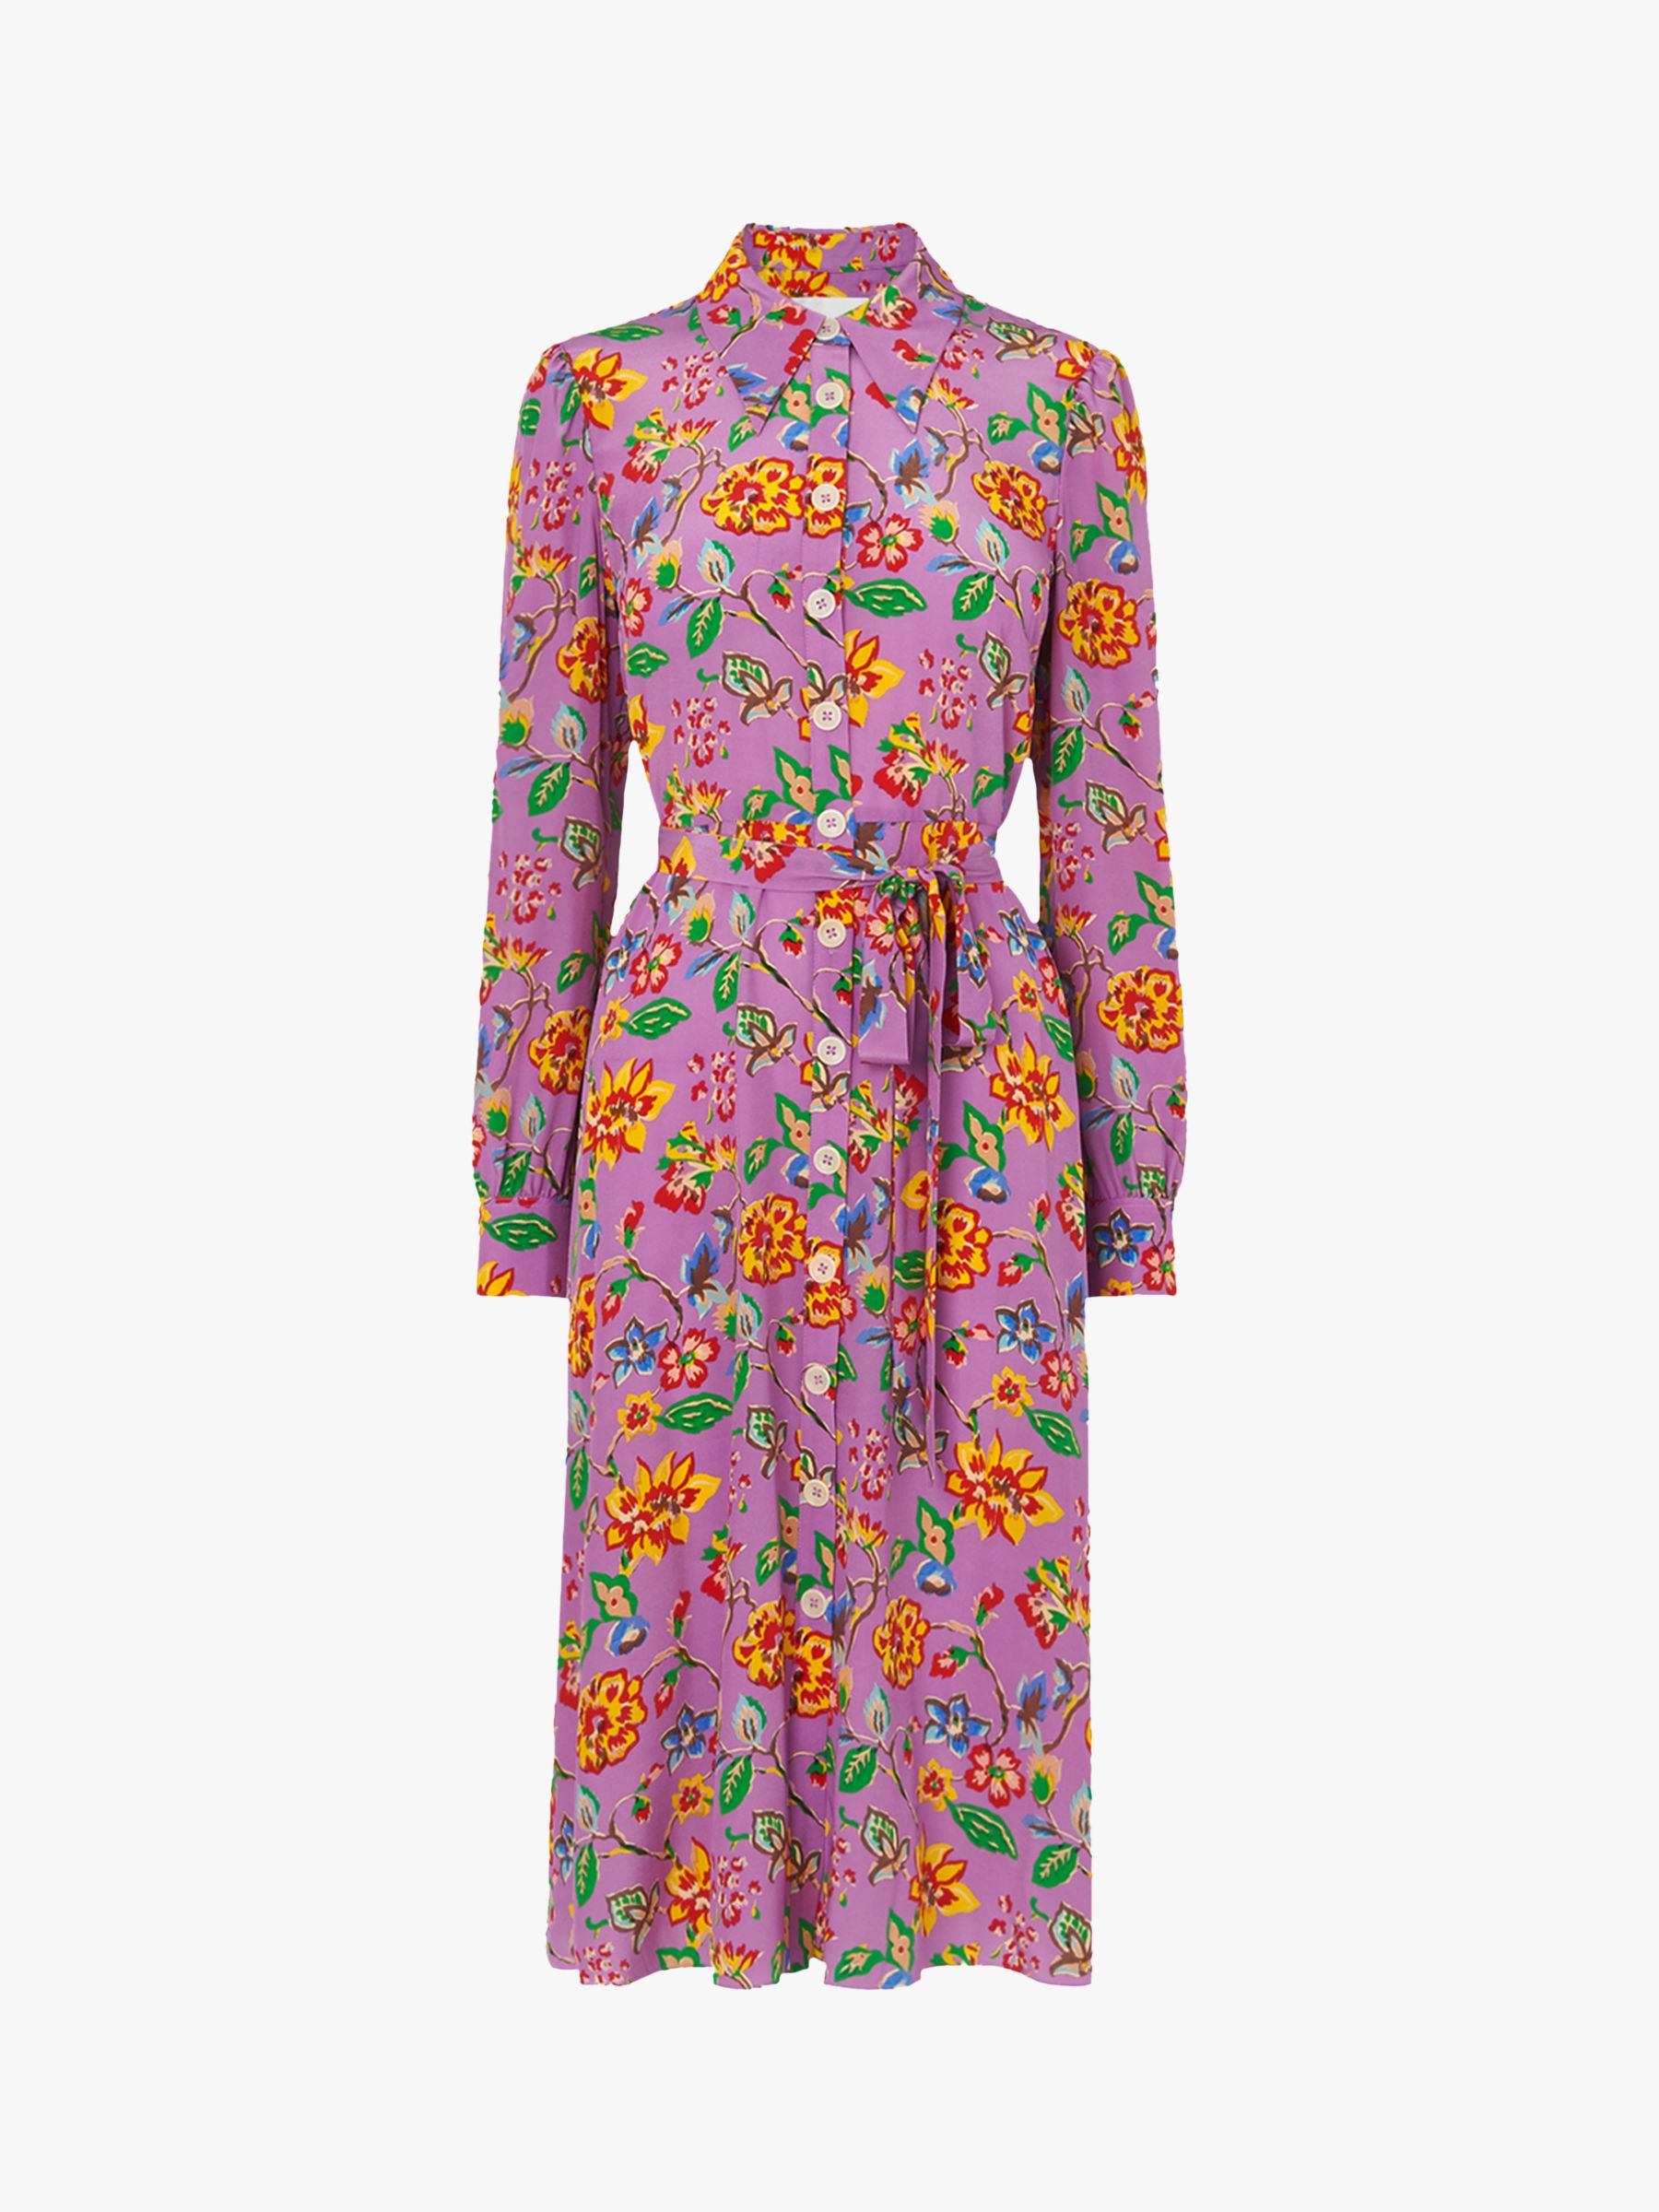 L.K.Bennett Runa 1940s Floral Print Silk Dress, Purple